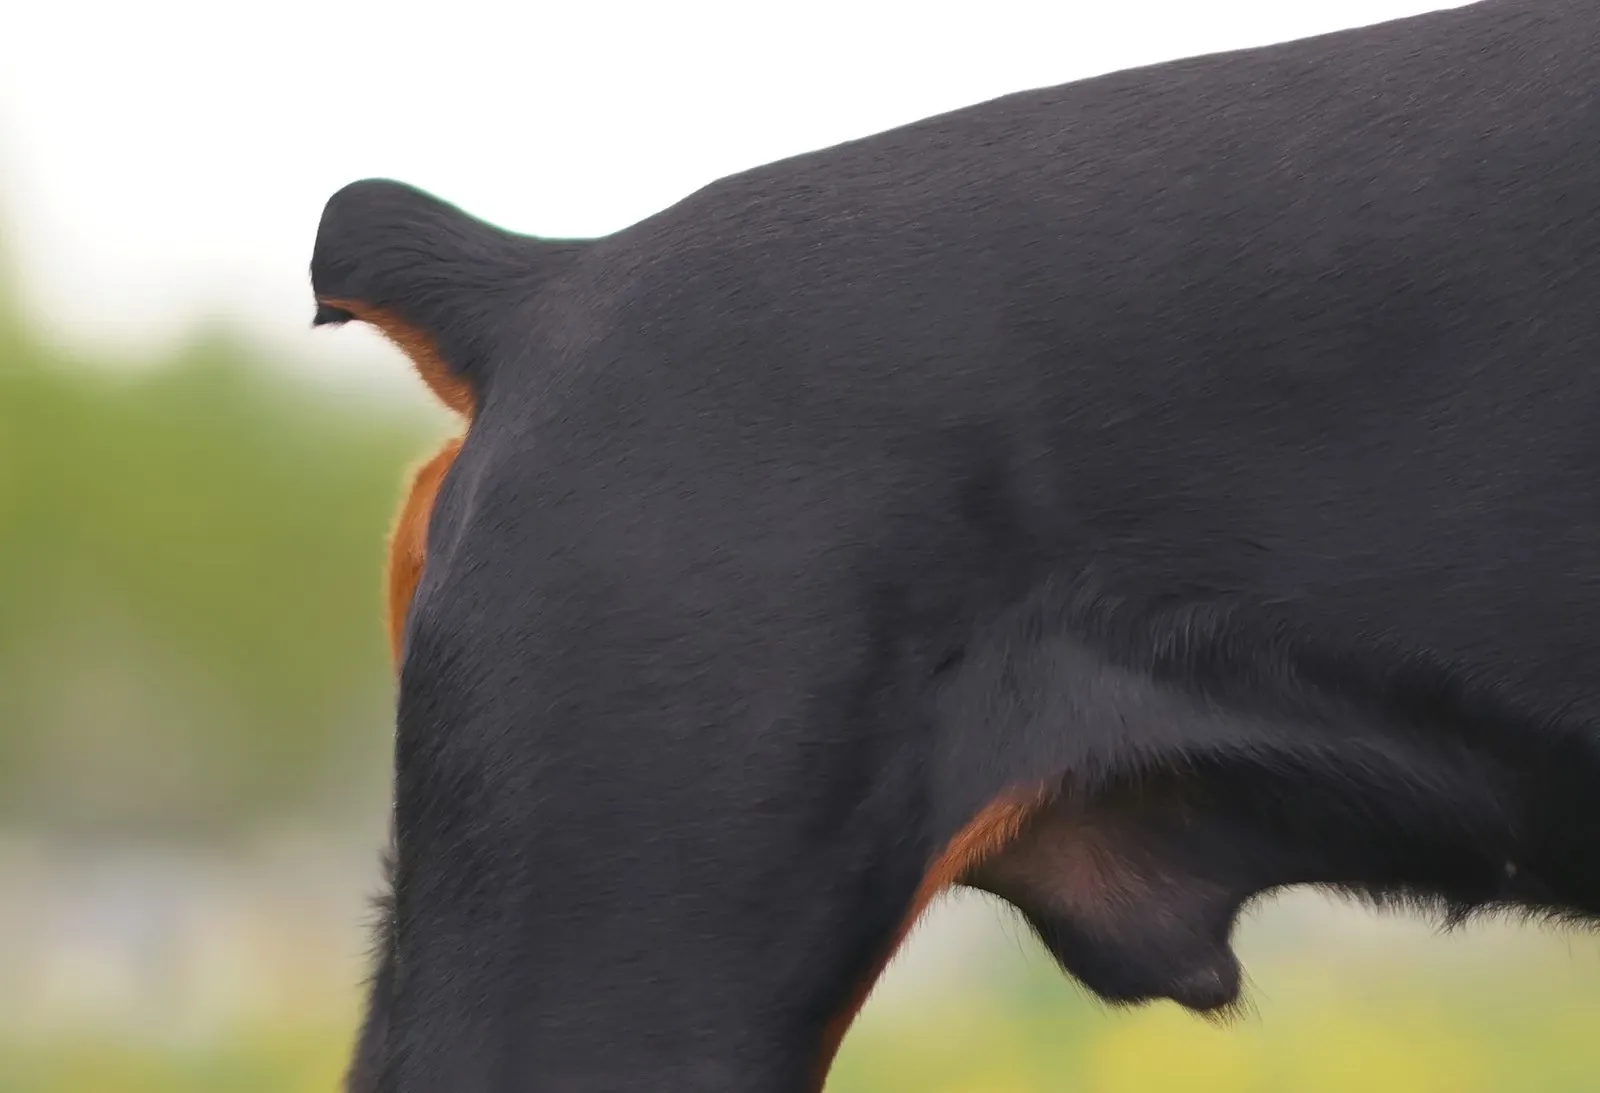 Halekupering Hvorfor klipper man halen af hunde